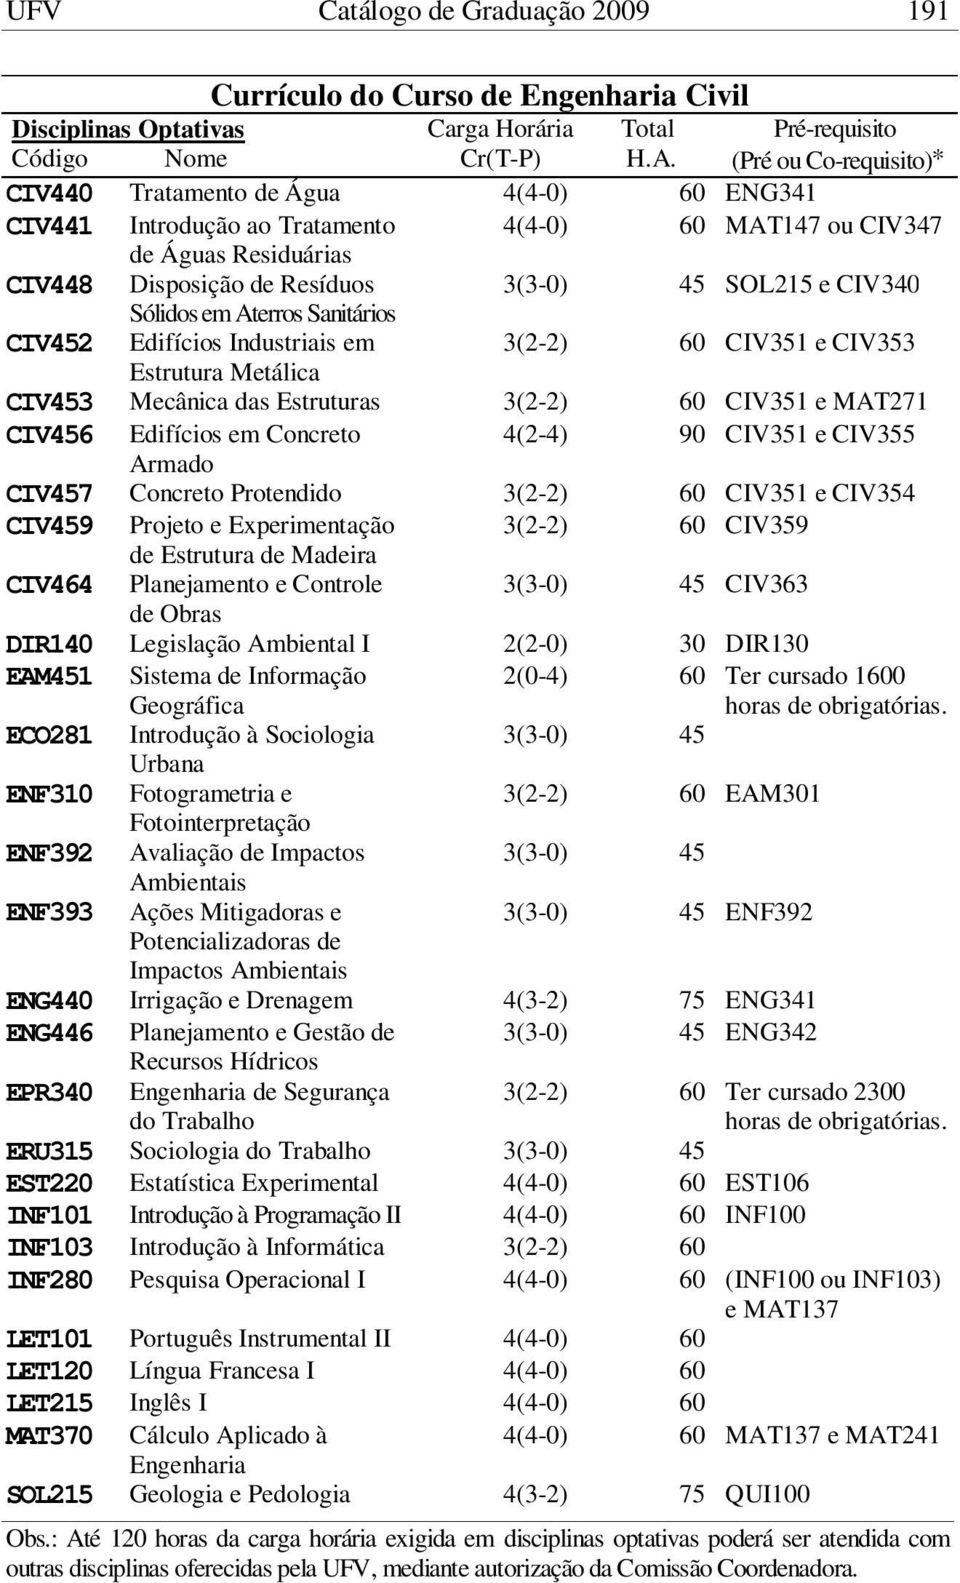 Sanitários CIV452 Edifícios Industriais em 3(2-2) 60 CIV351 e CIV353 Estrutura Metálica CIV453 Mecânica das Estruturas 3(2-2) 60 CIV351 e MAT271 CIV456 Edifícios em Concreto 4(2-4) 90 CIV351 e CIV355